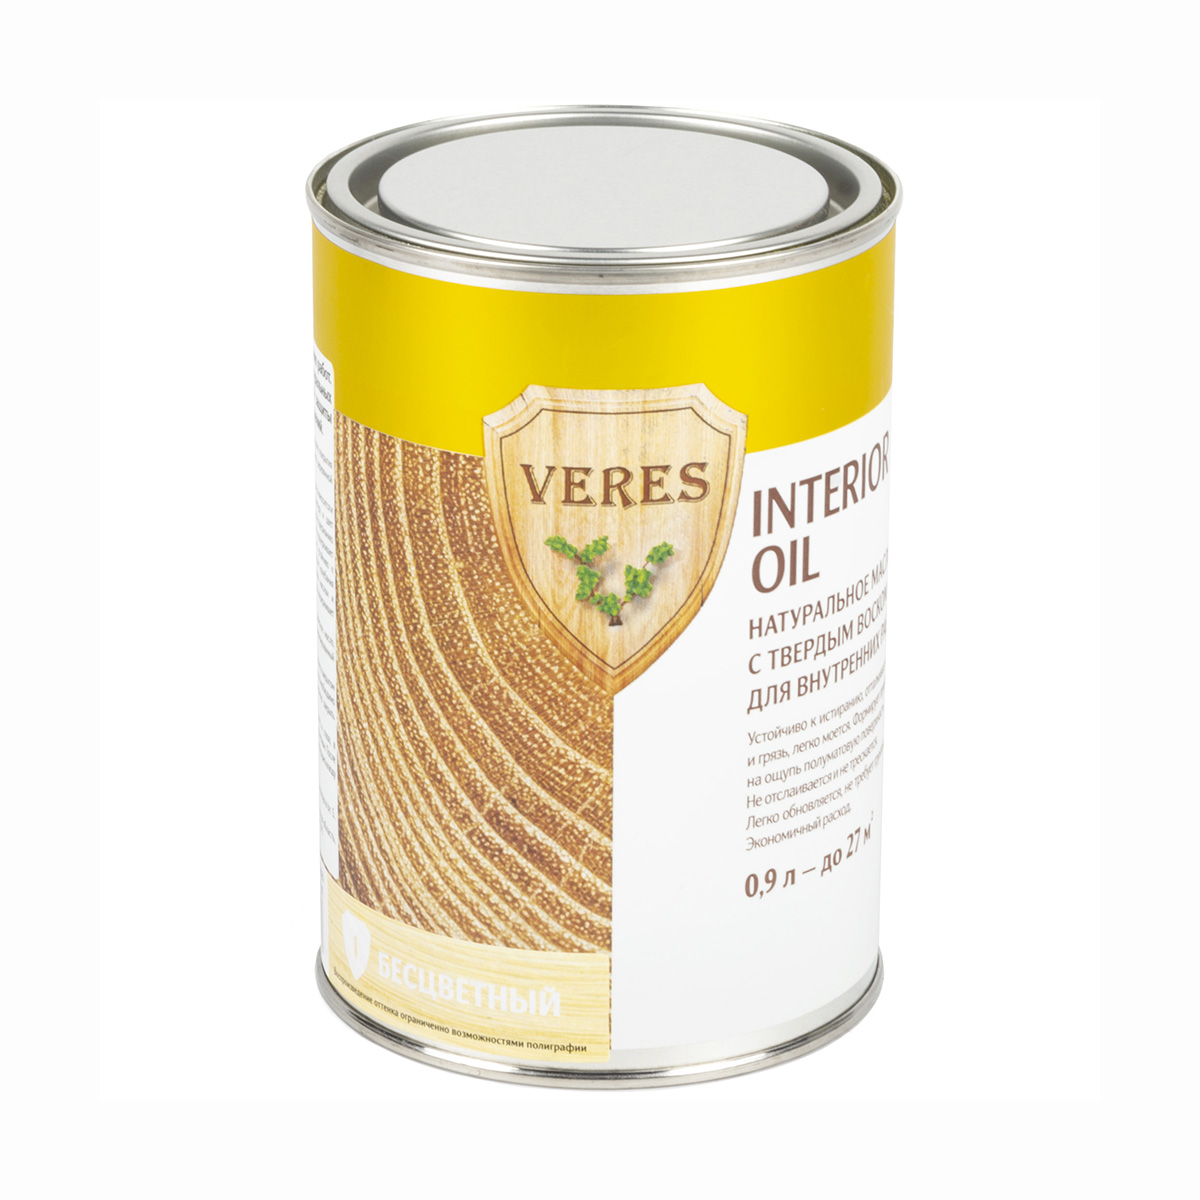 Верес масло для внутр. работ  "oil interior"  № 1 бесцветный  0,9 л (1/6) "veres"